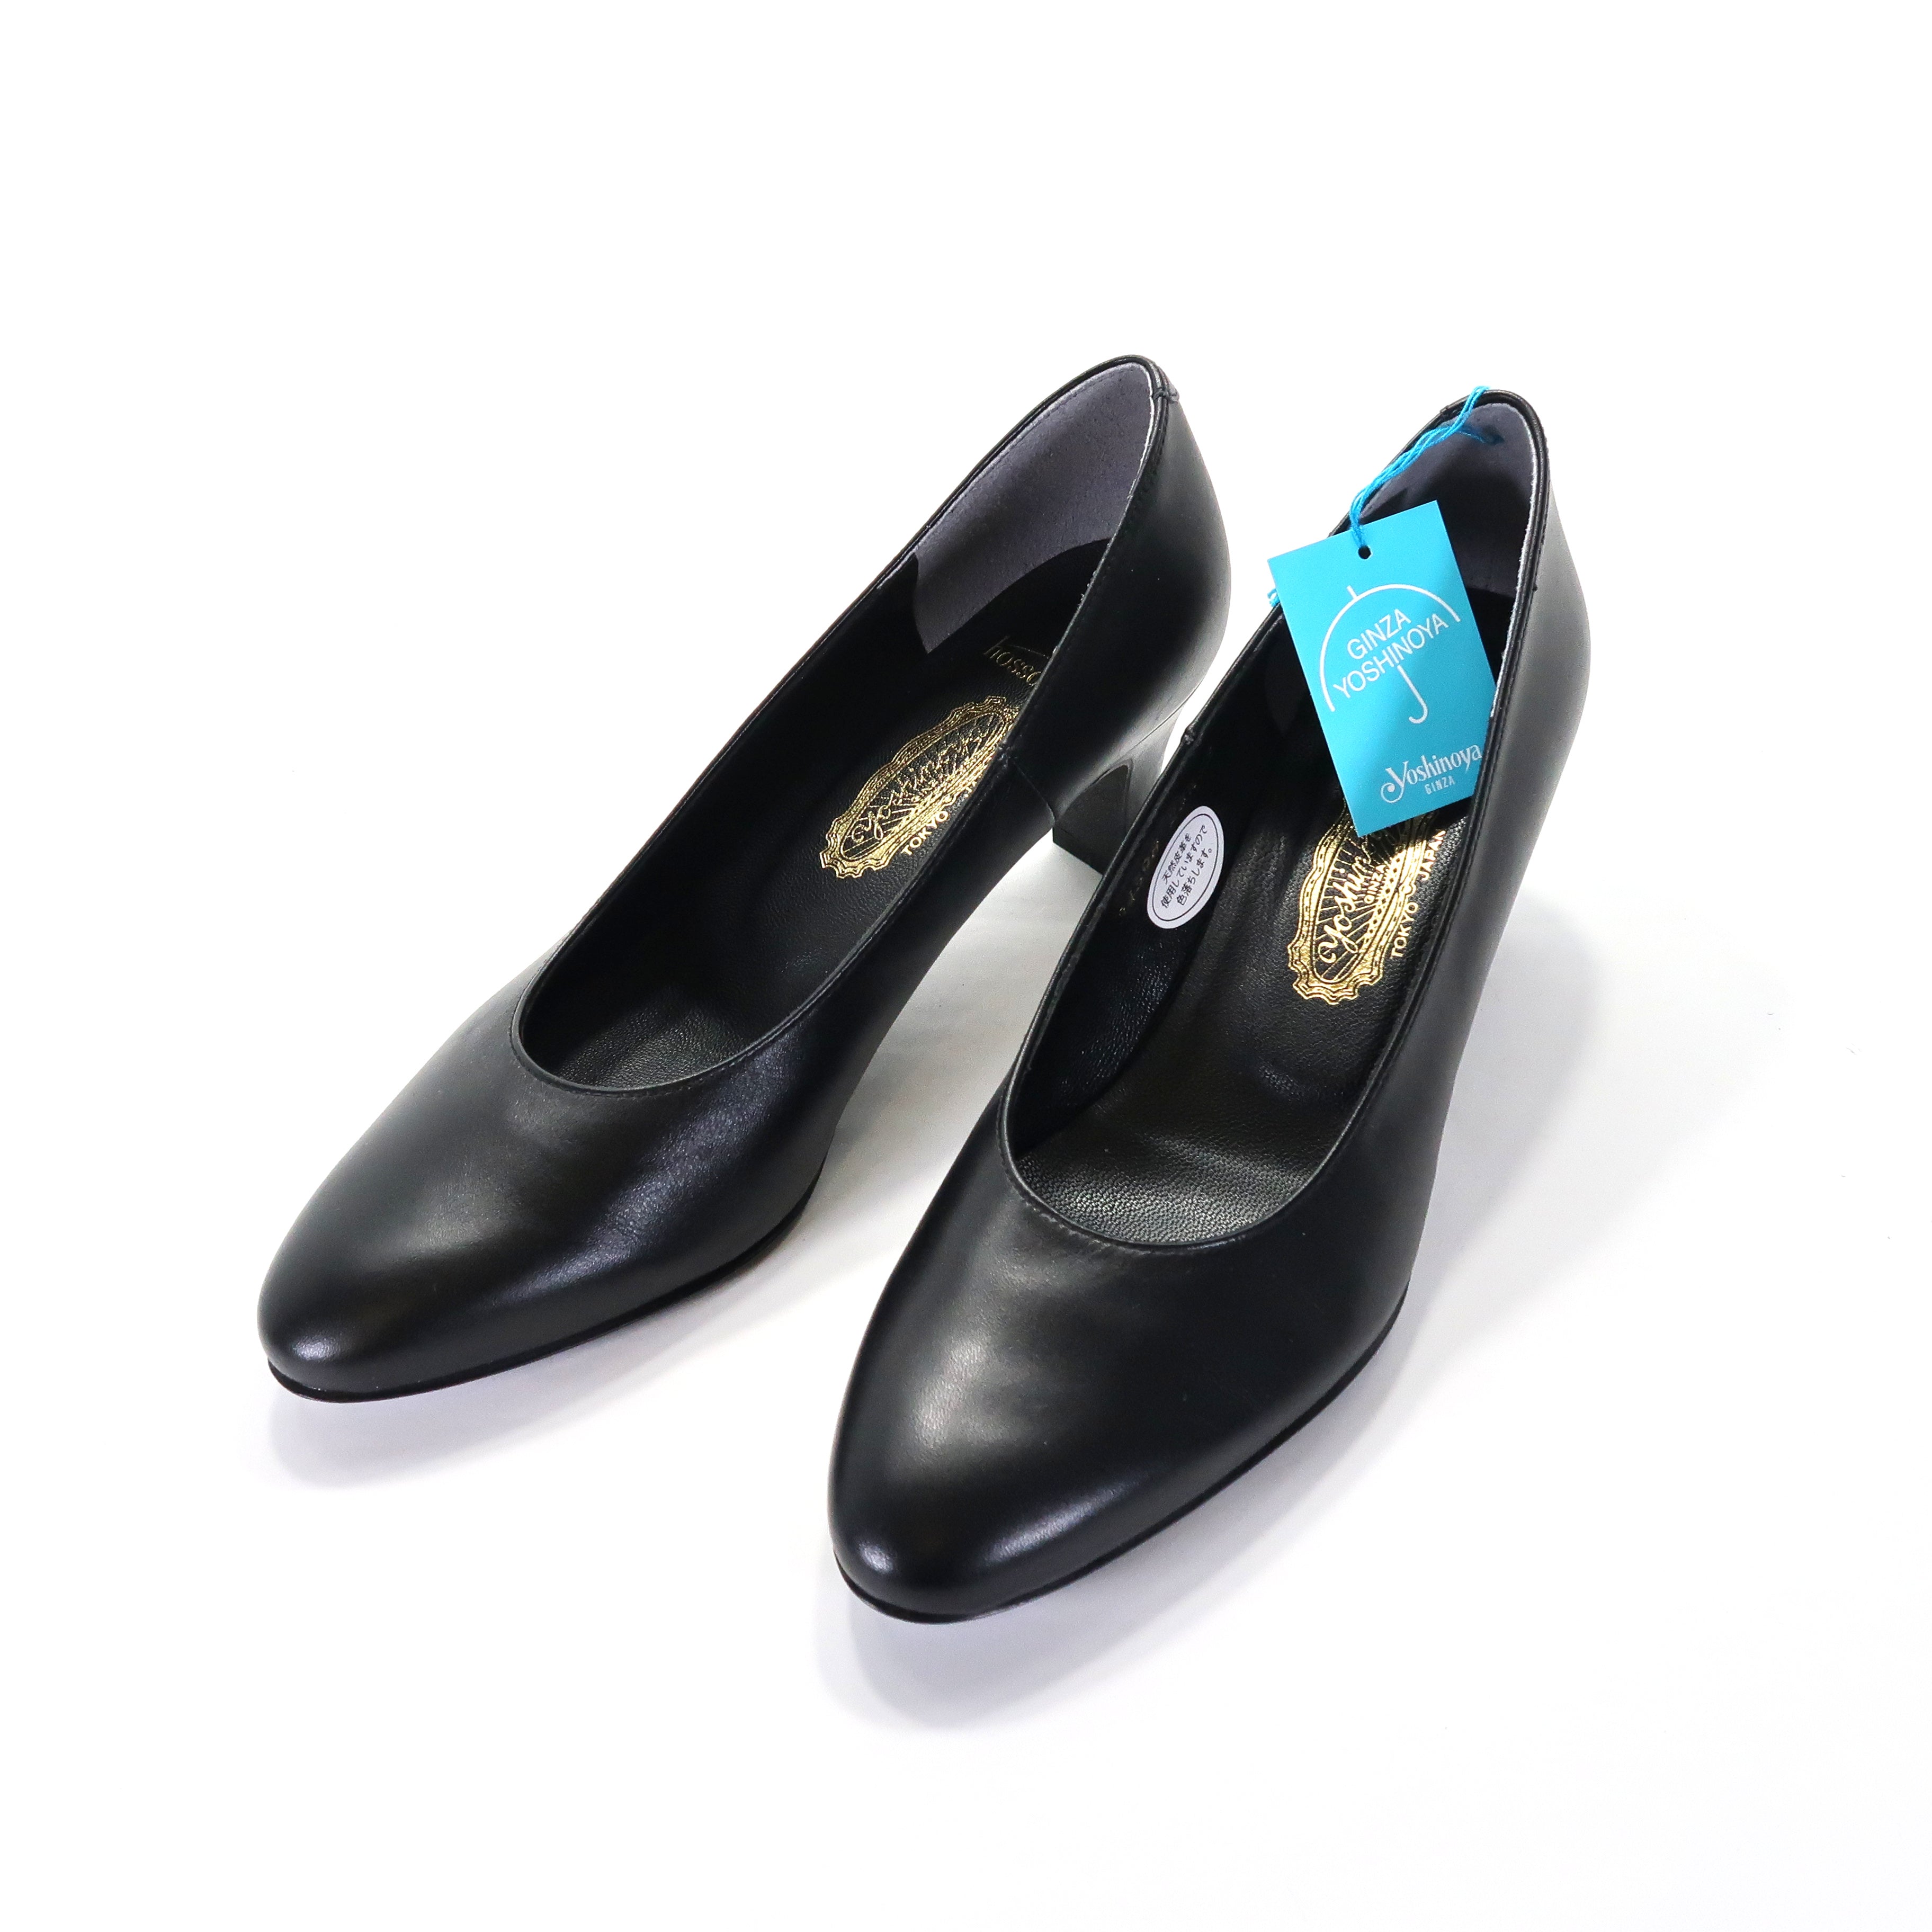 銀座ヨシノヤ(YOSHINOYA) 女性用 甲が薄く細身の足用に設計されたC靴型 